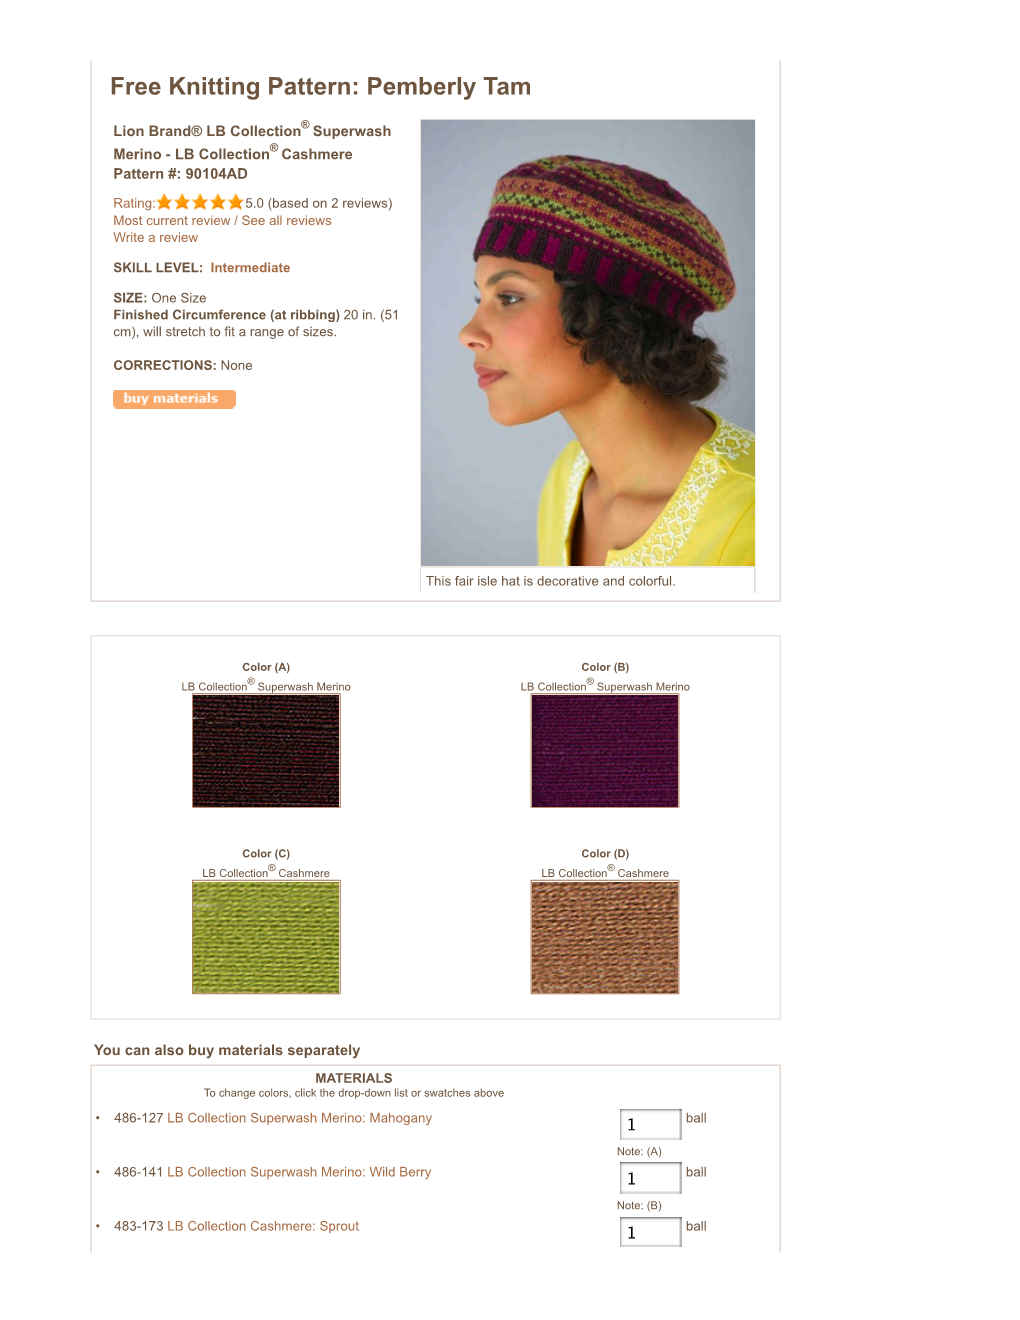 Free Knitting Pattern 90104AD Pemberly